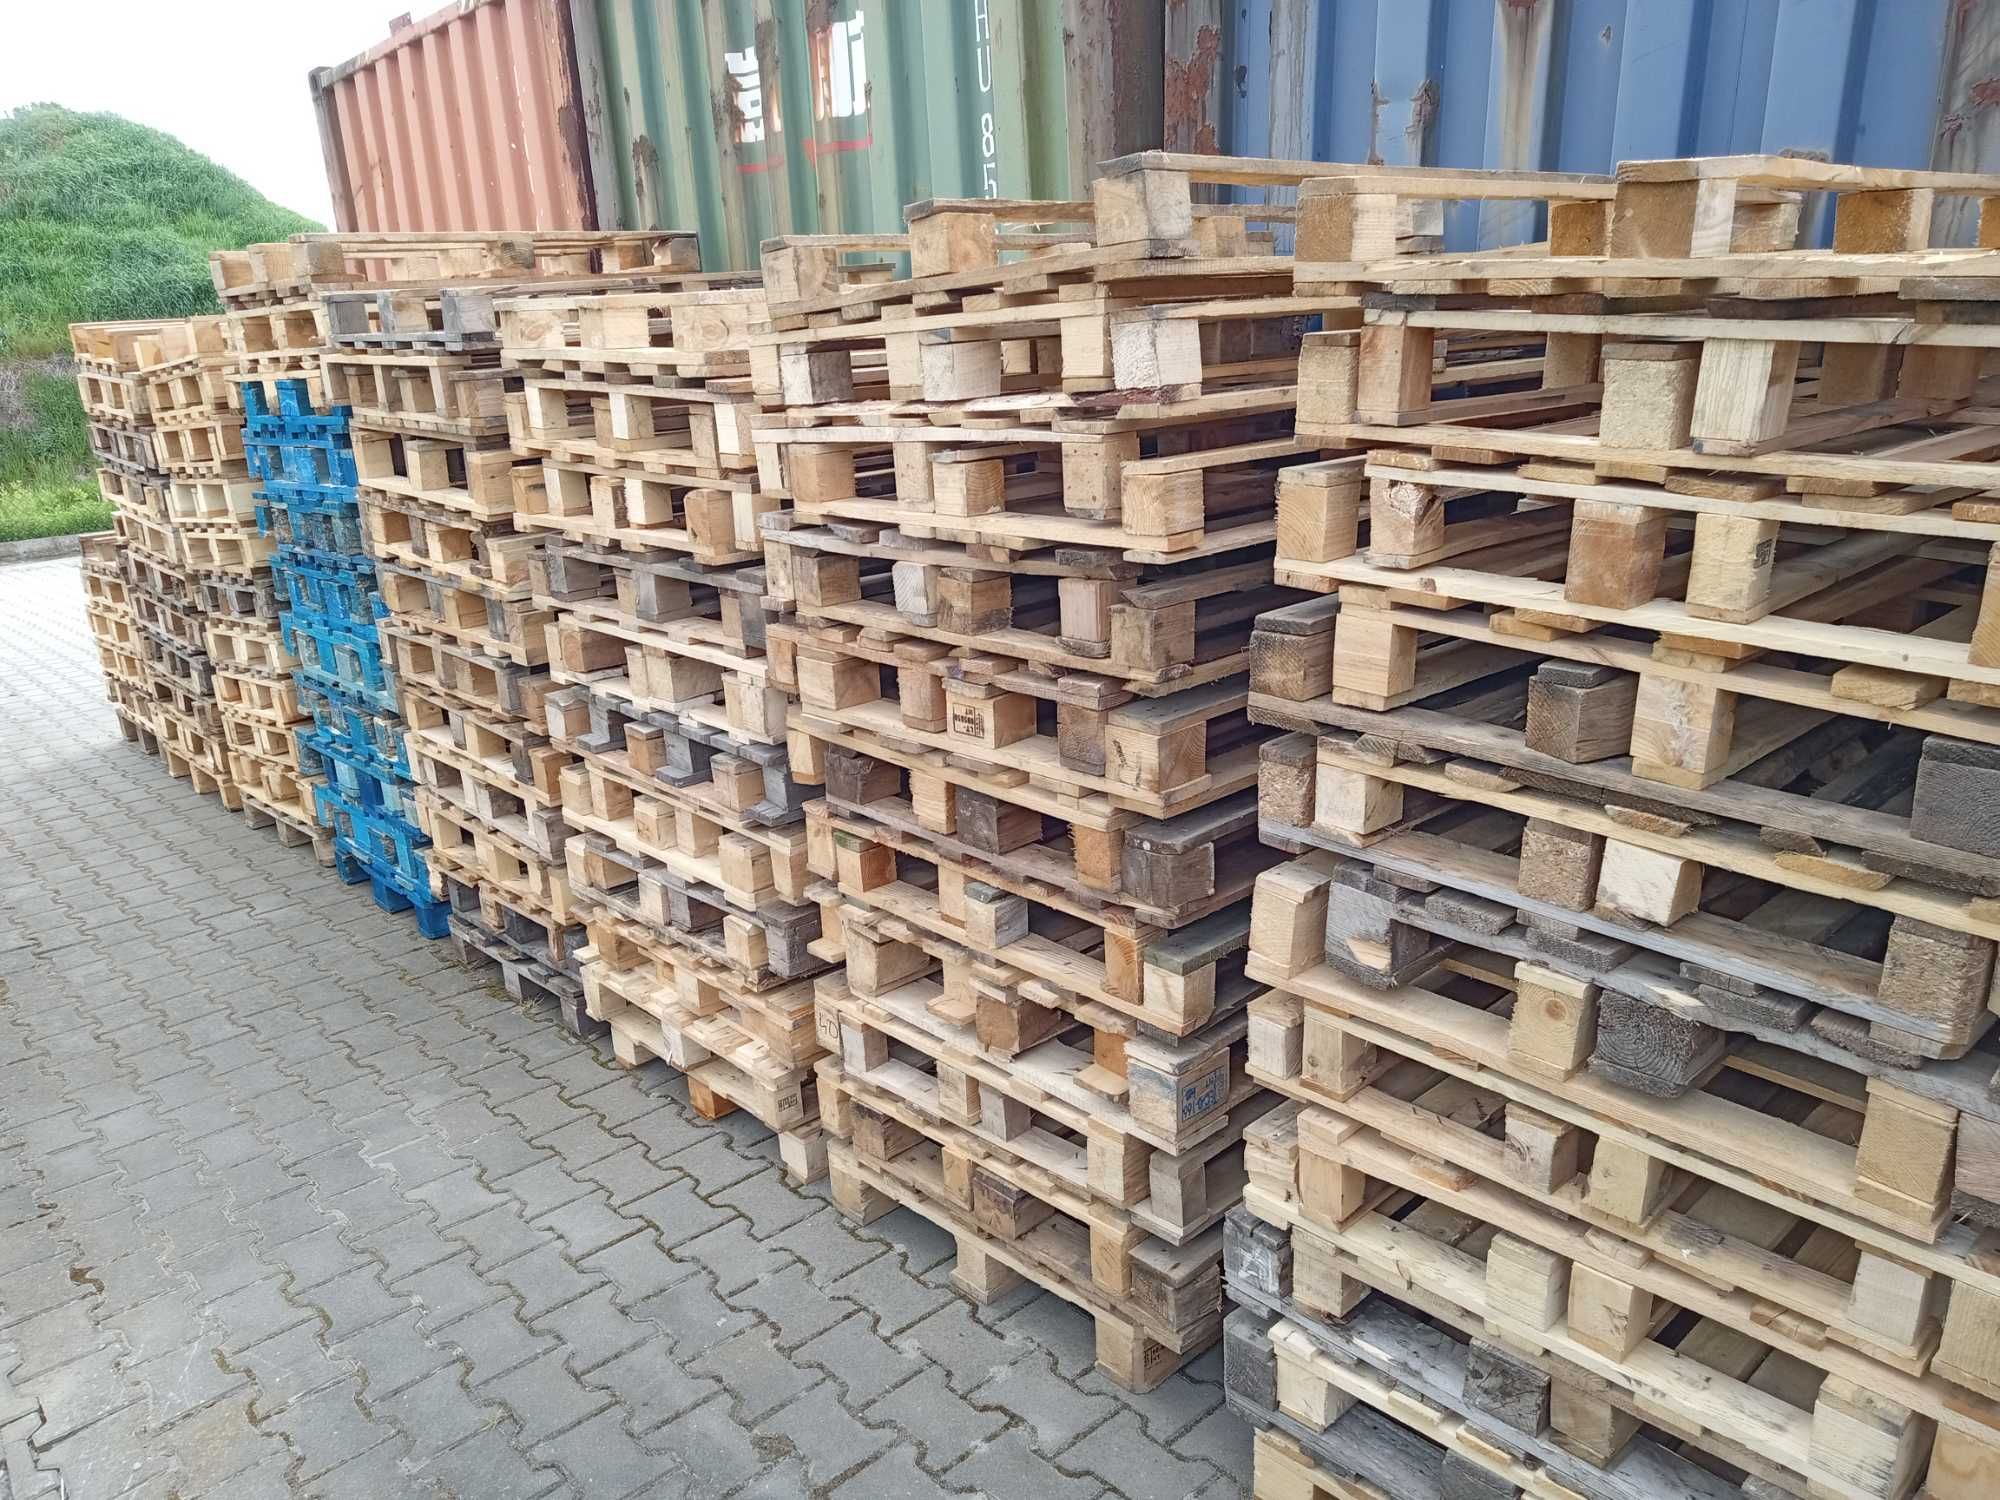 Palety jednorazowe 120/80 epal euro  drewniane